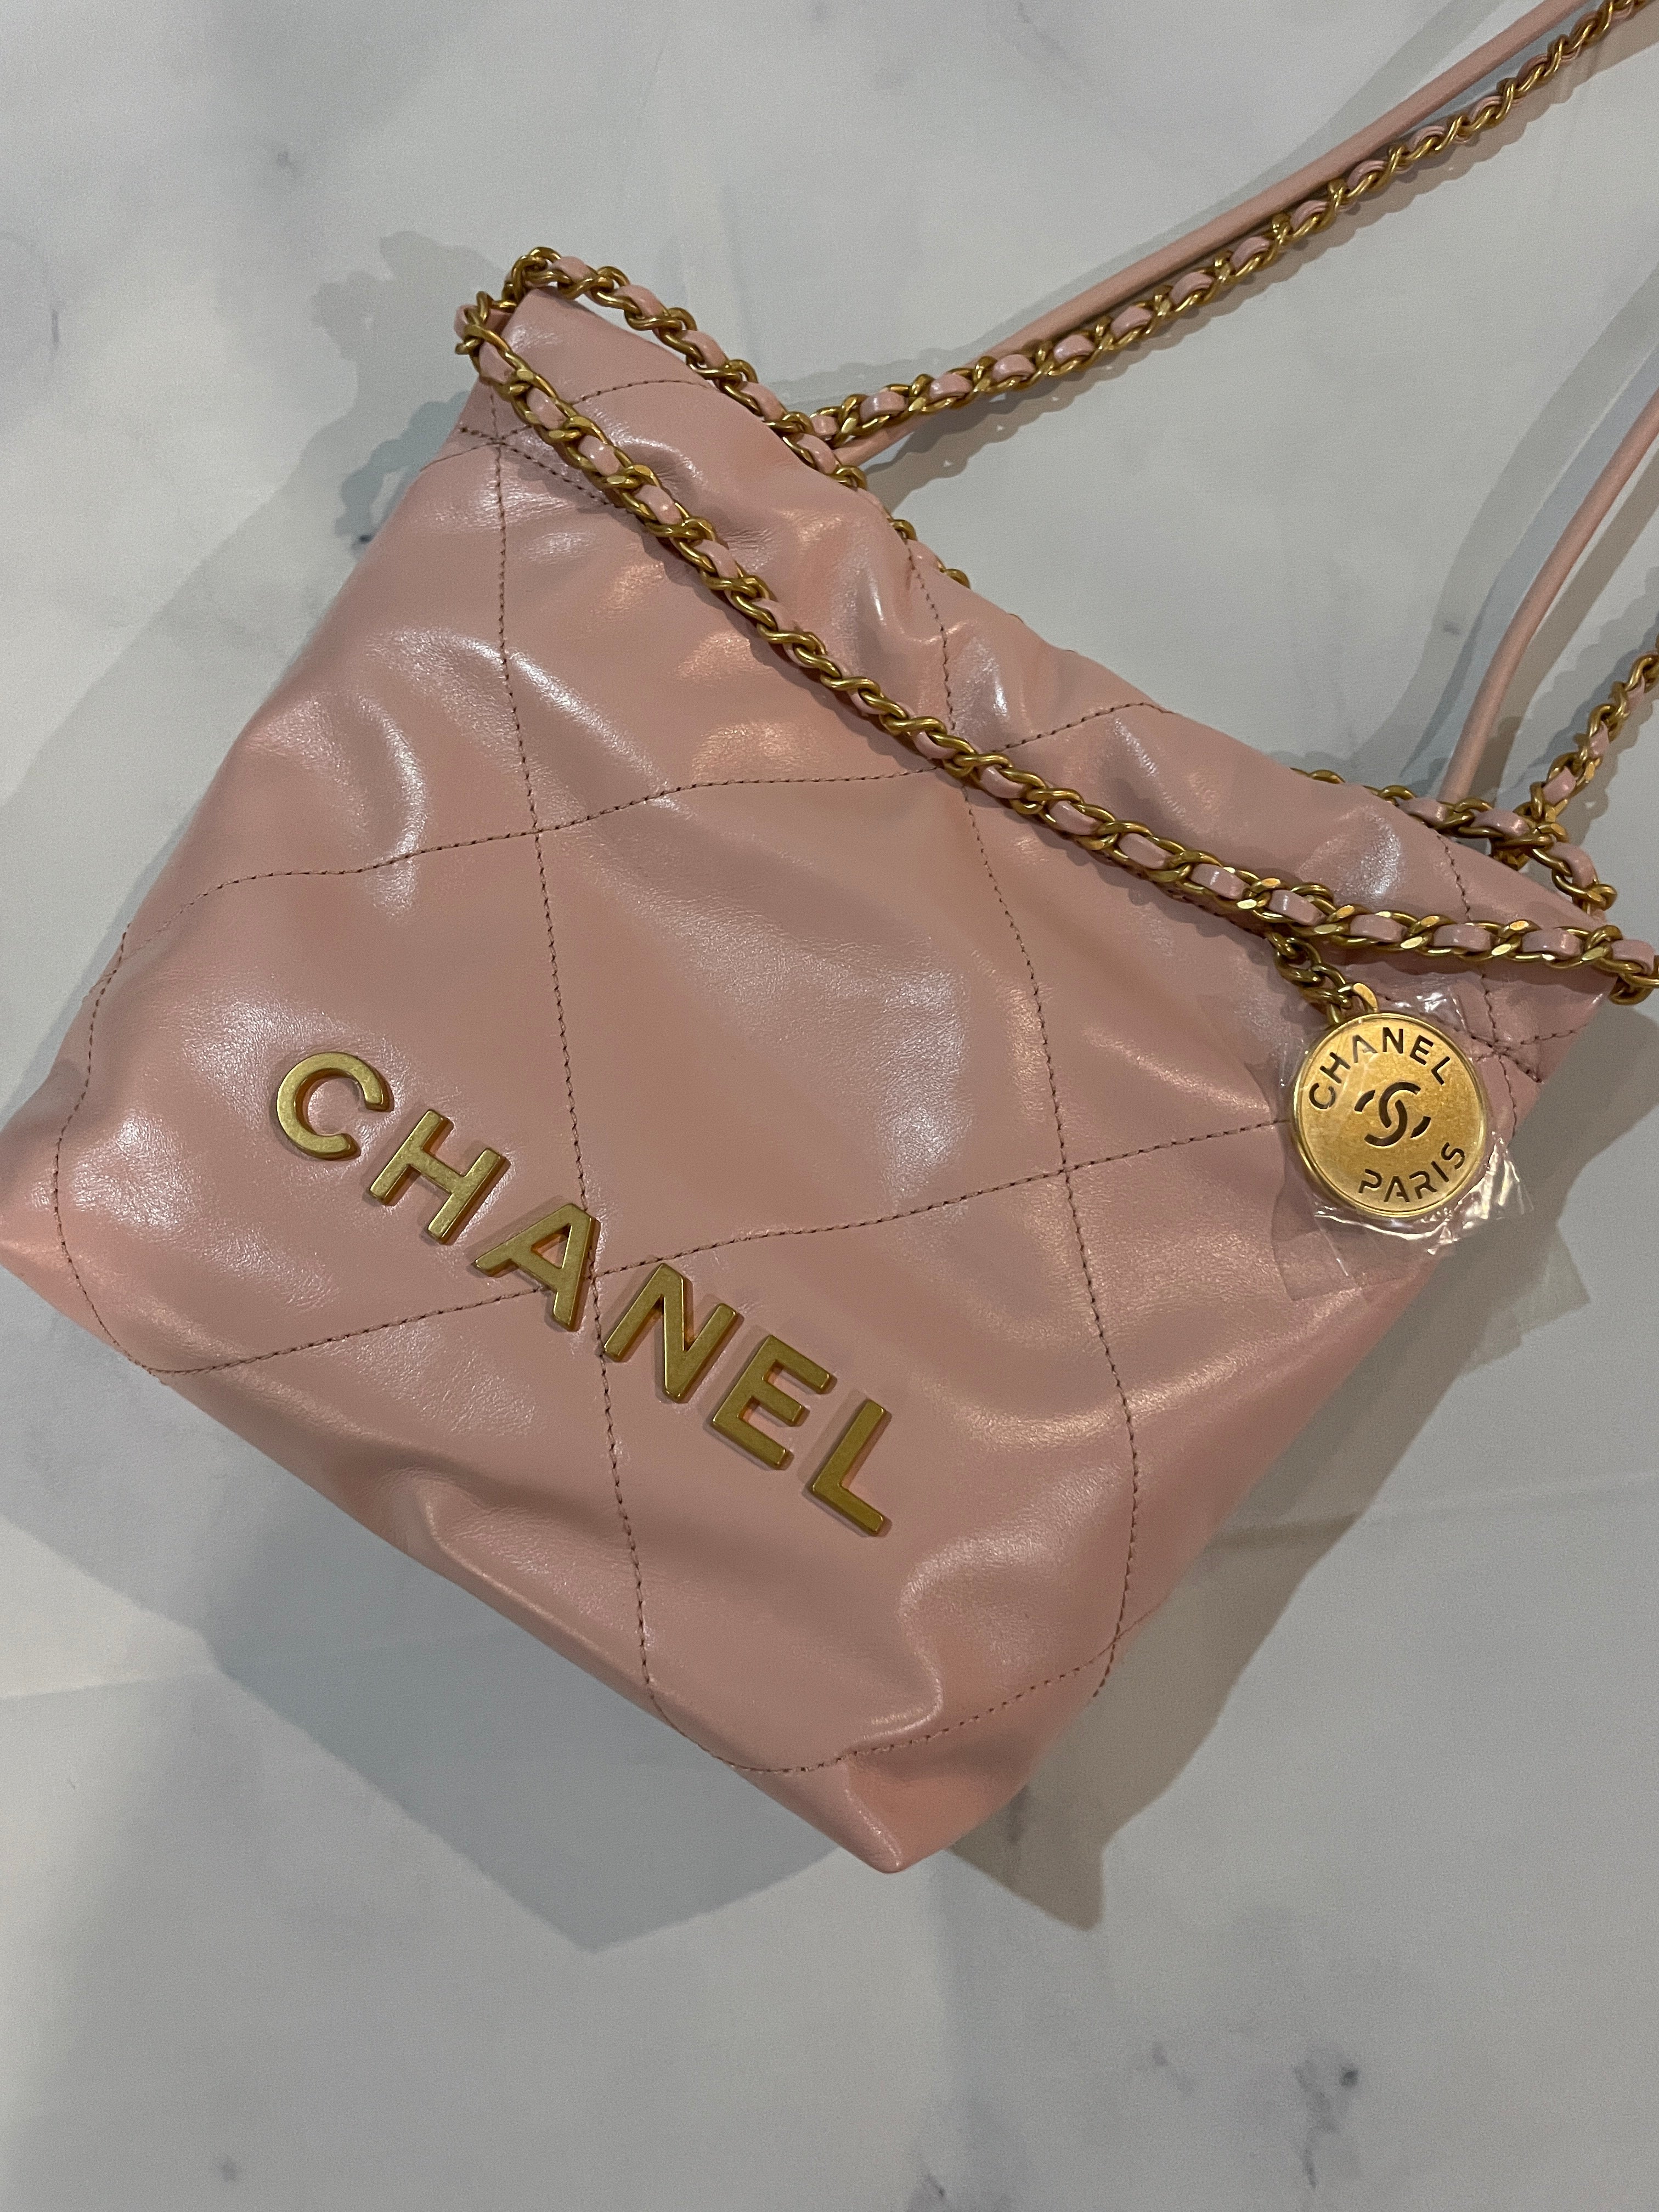 CHANEL Tote Bag - Mesh Black Travel Handbag Gold Chain